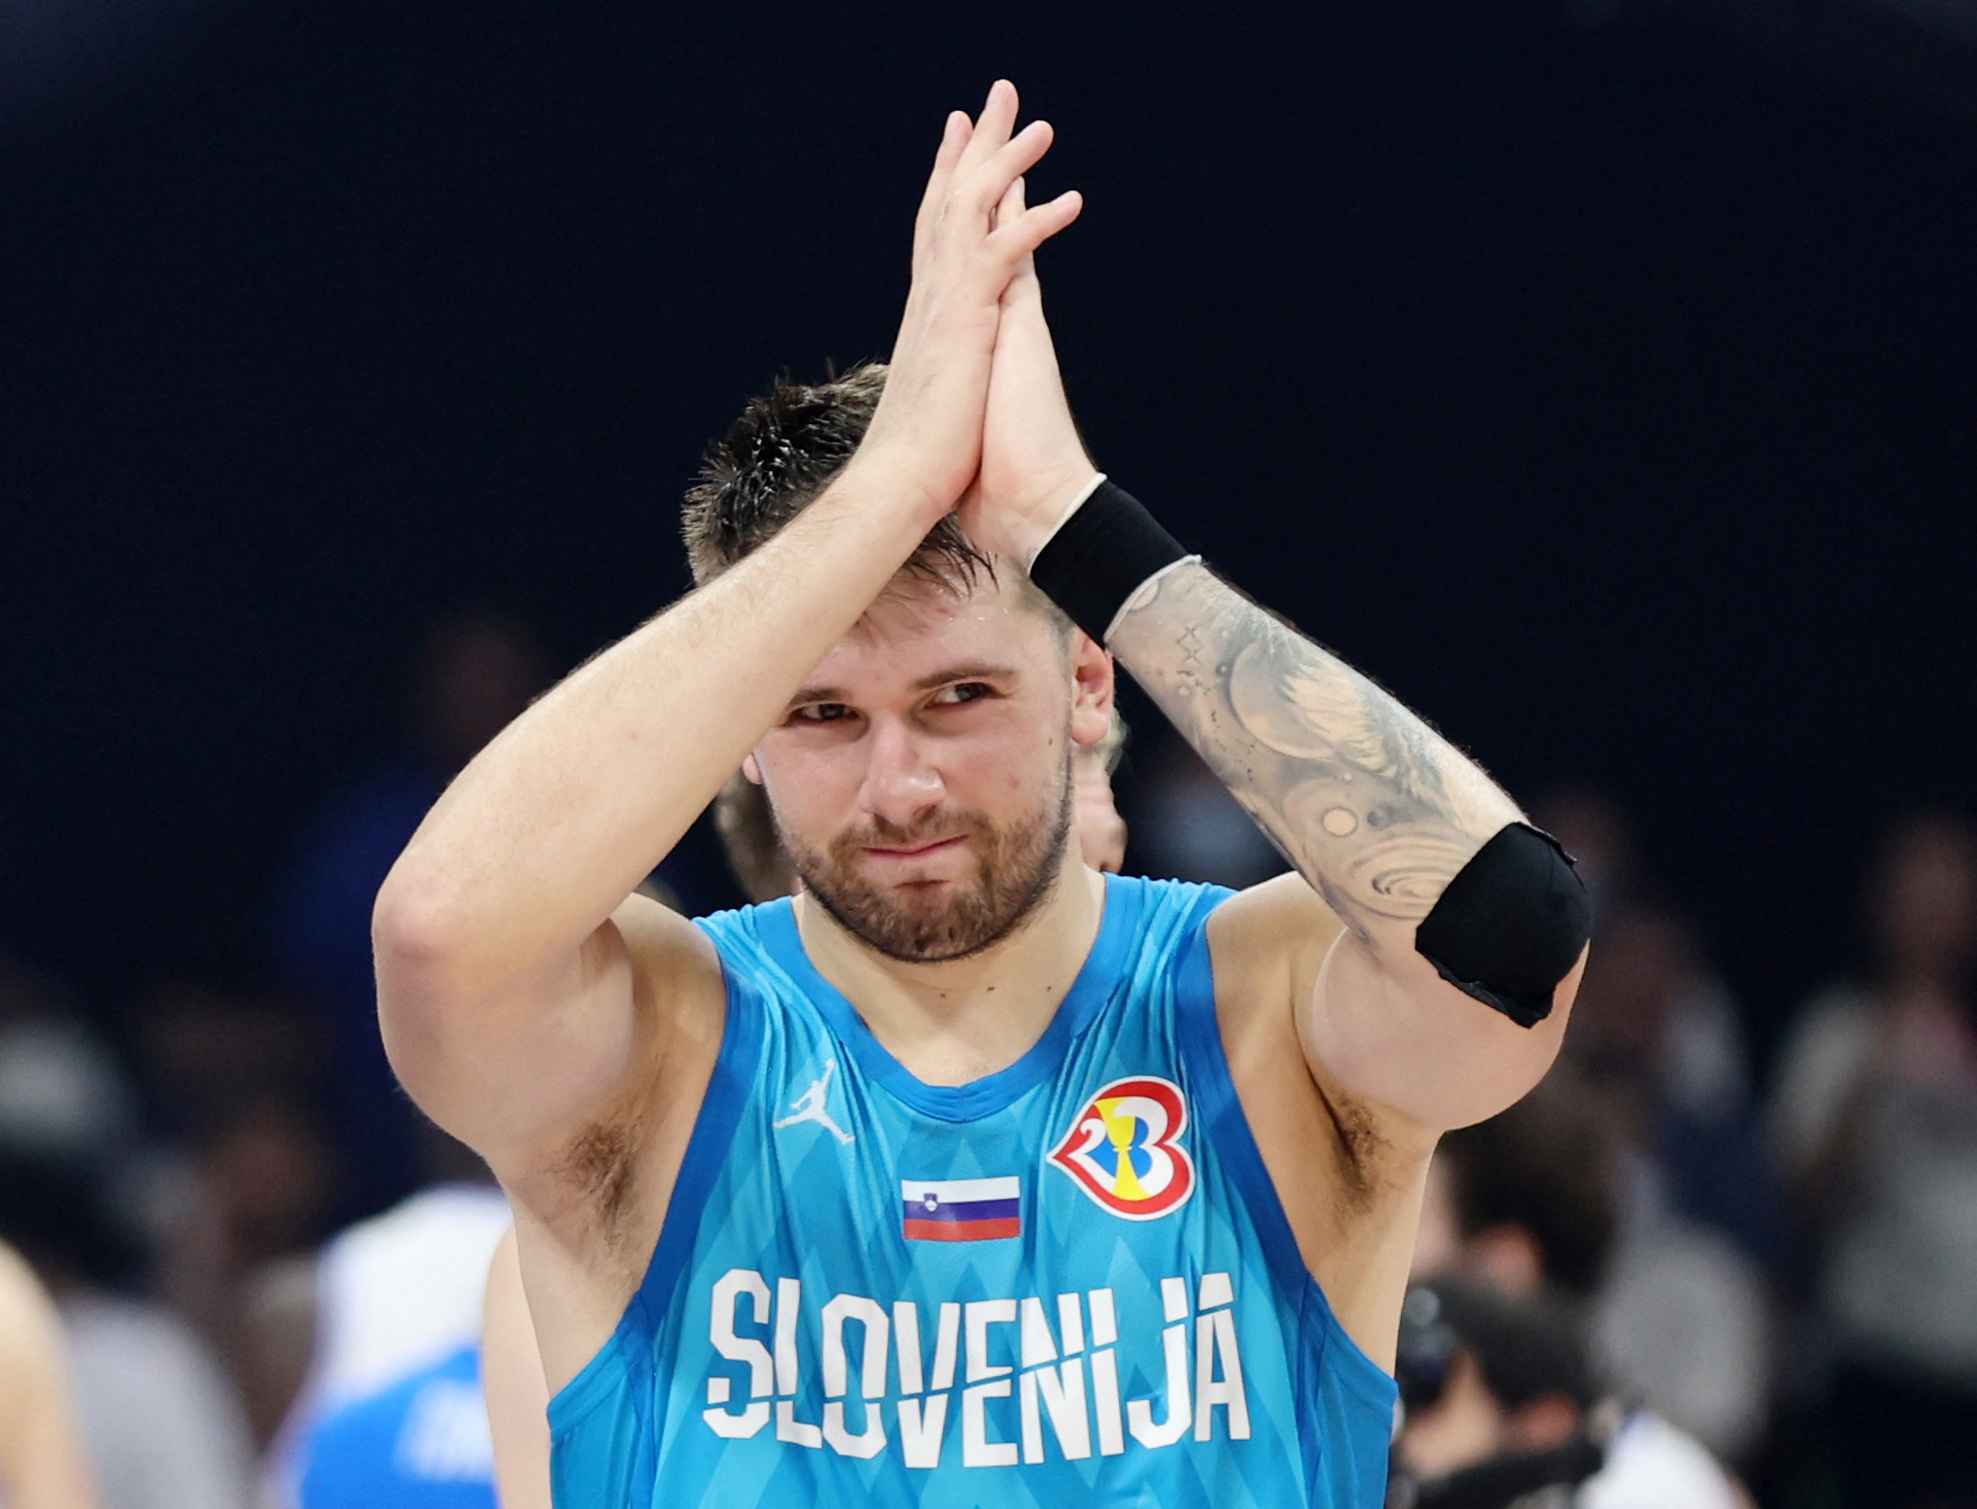 Mundobasket 2023: Η Σλοβενία κέρδισε την Ιταλία 89-85 και κατέκτησε την 7η θέση στην διοργάνωση